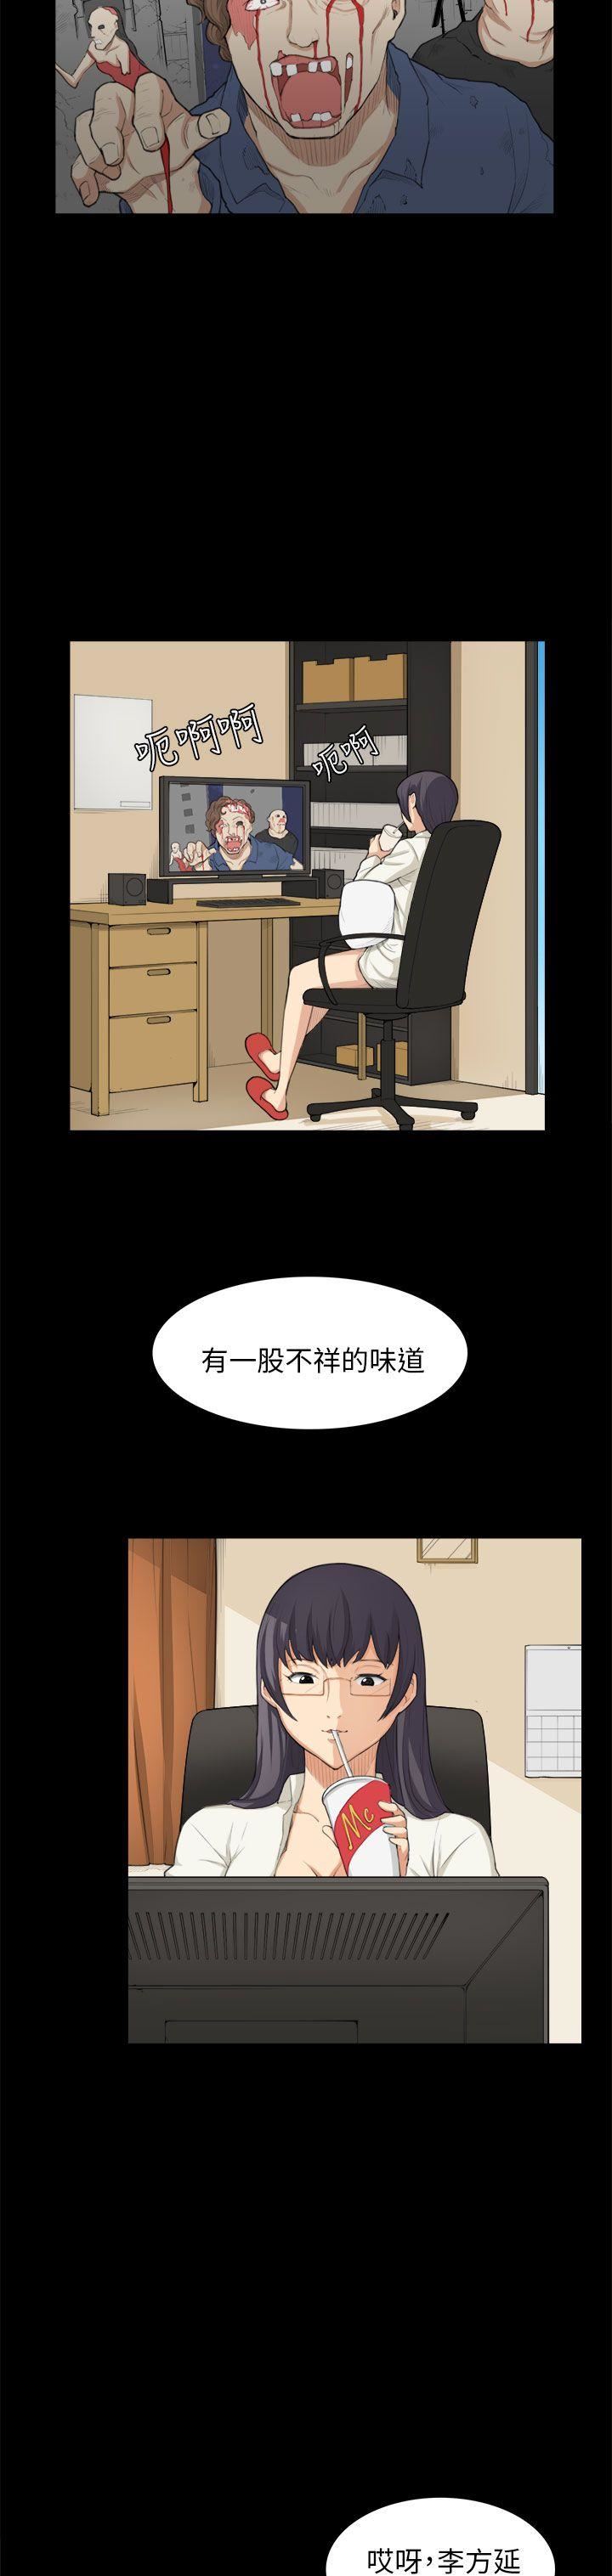 韩国污漫画 斯德哥爾摩癥候群 第24话 8